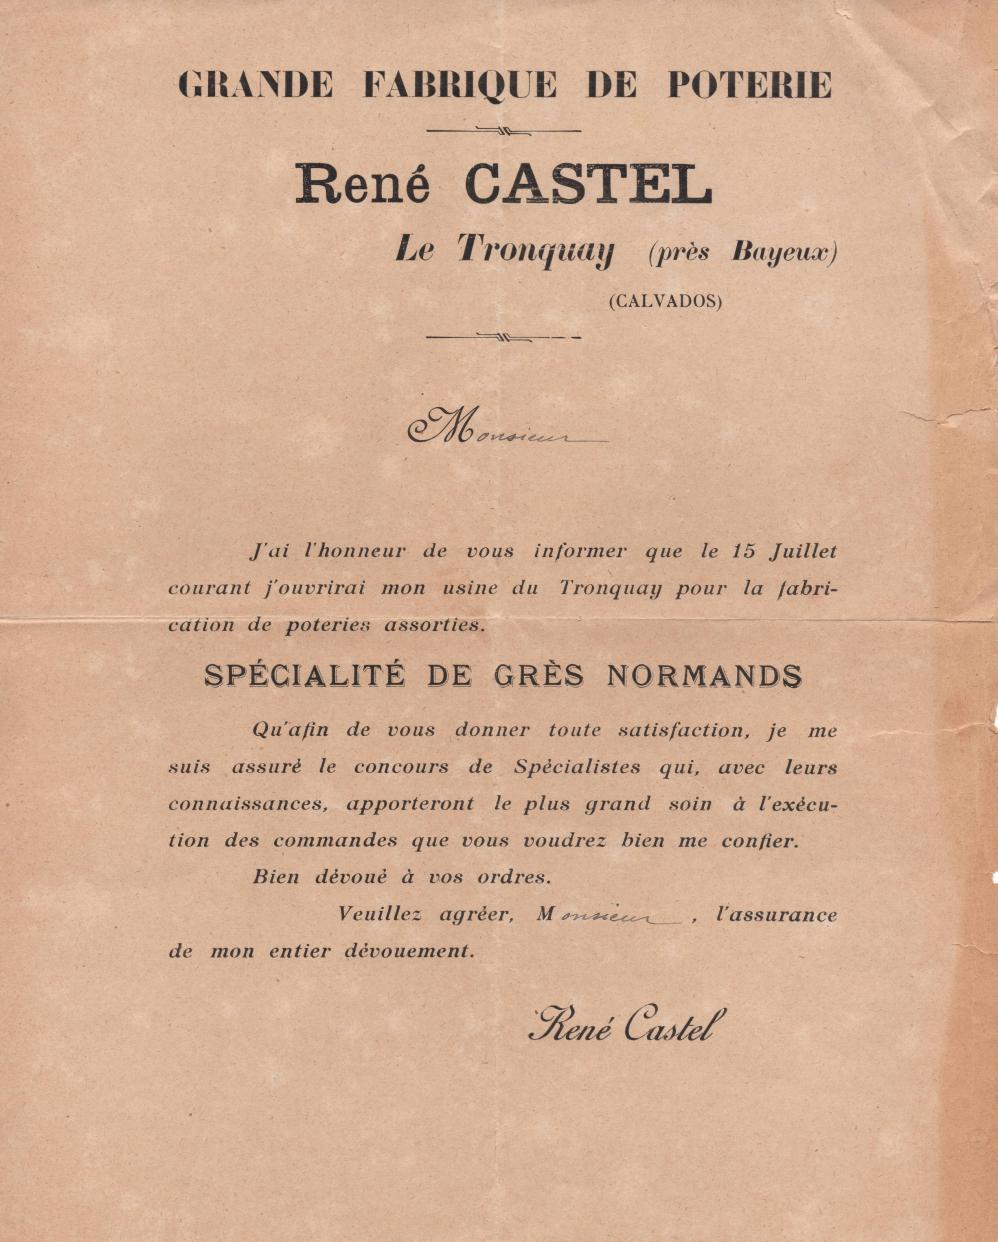 affichette publicitaire pour l'ouverture de la fabrique Castel en 1925 / Coll. Cheval